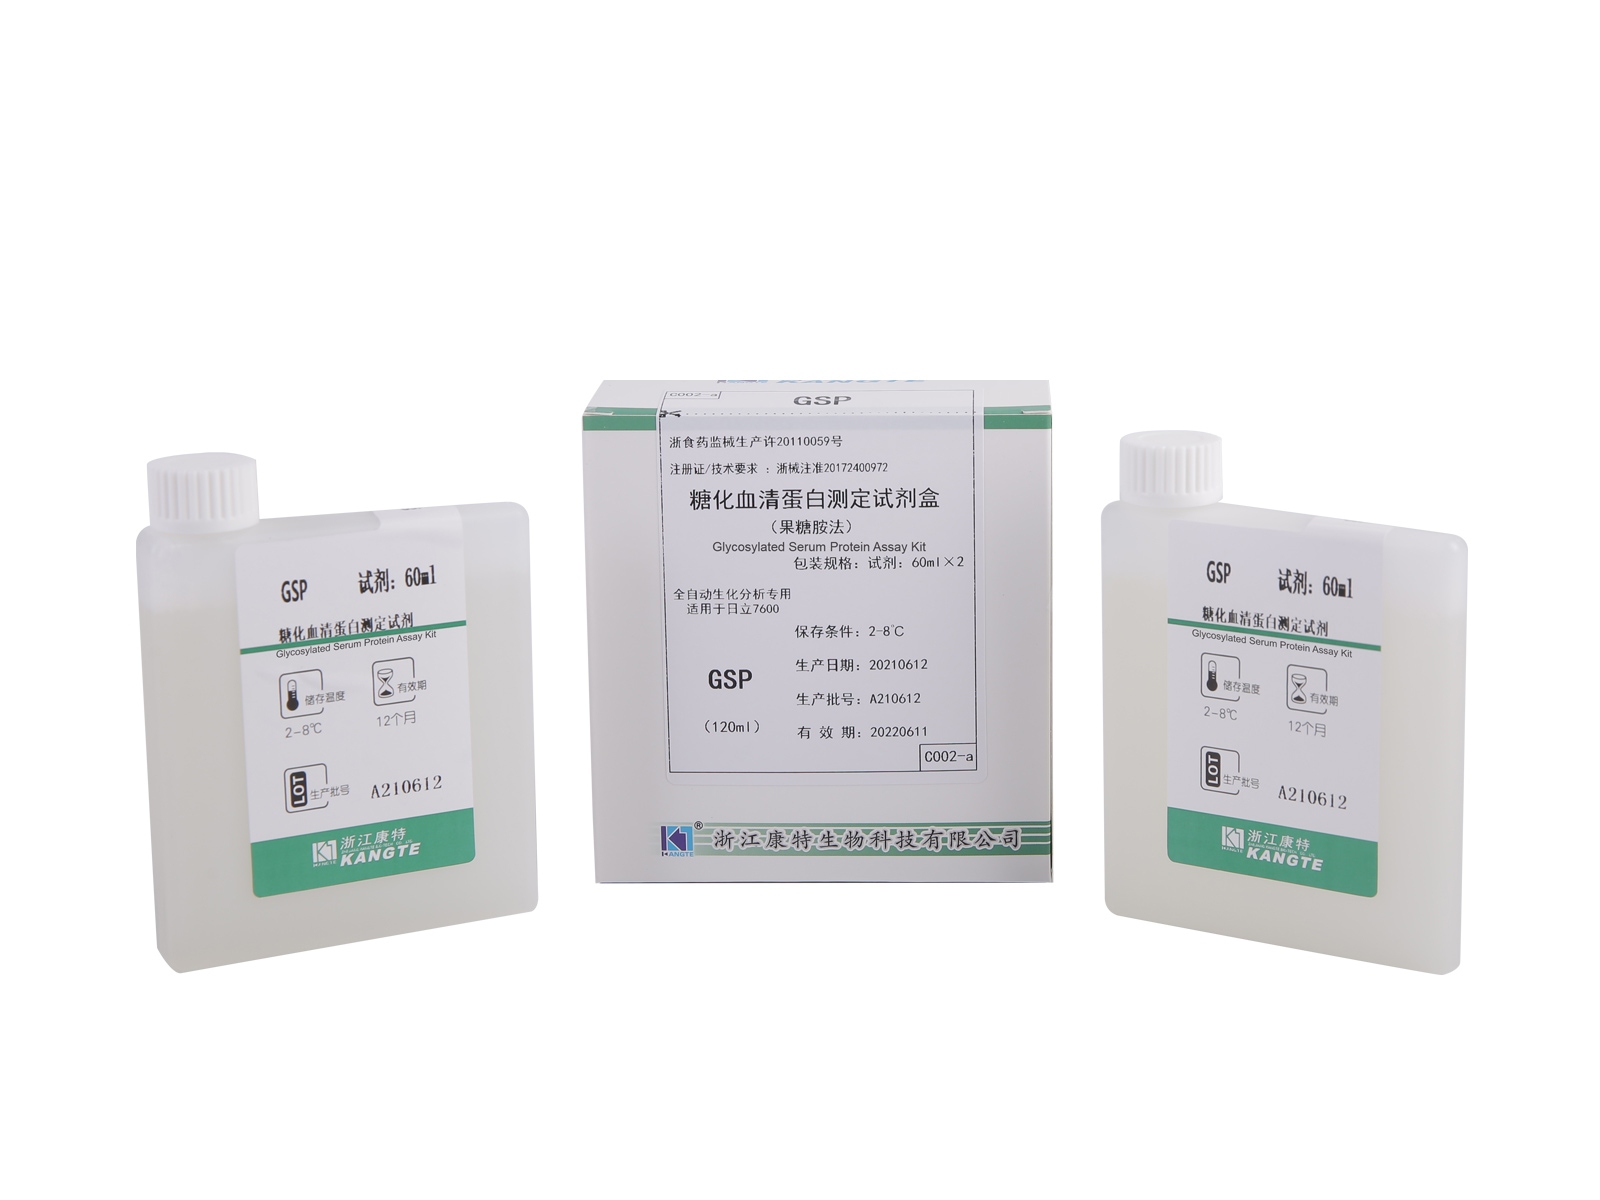 【GSP】 Kit de ensaio de proteína sérica glicosilada (método de frutosamina)